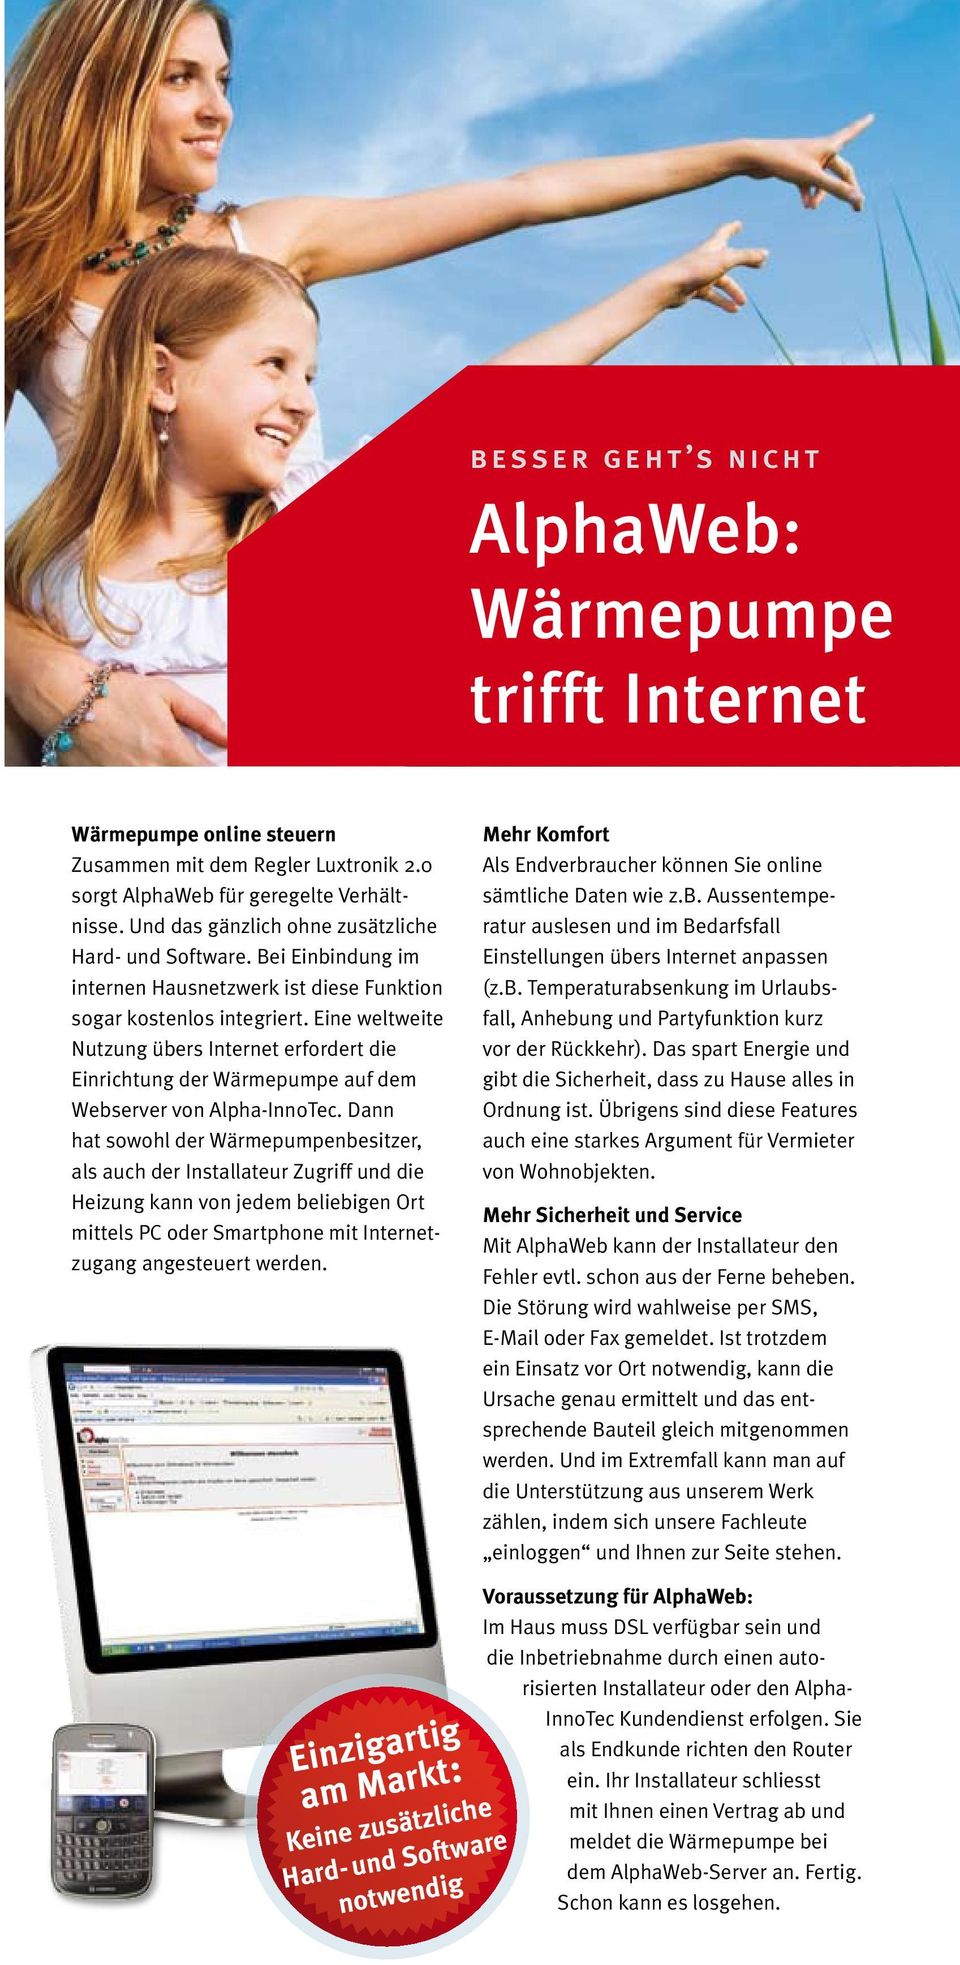 Eine weltweite Nutzung übers Internet erfordert die Einrichtung der Wärmepumpe auf dem Webserver von Alpha-InnoTec.